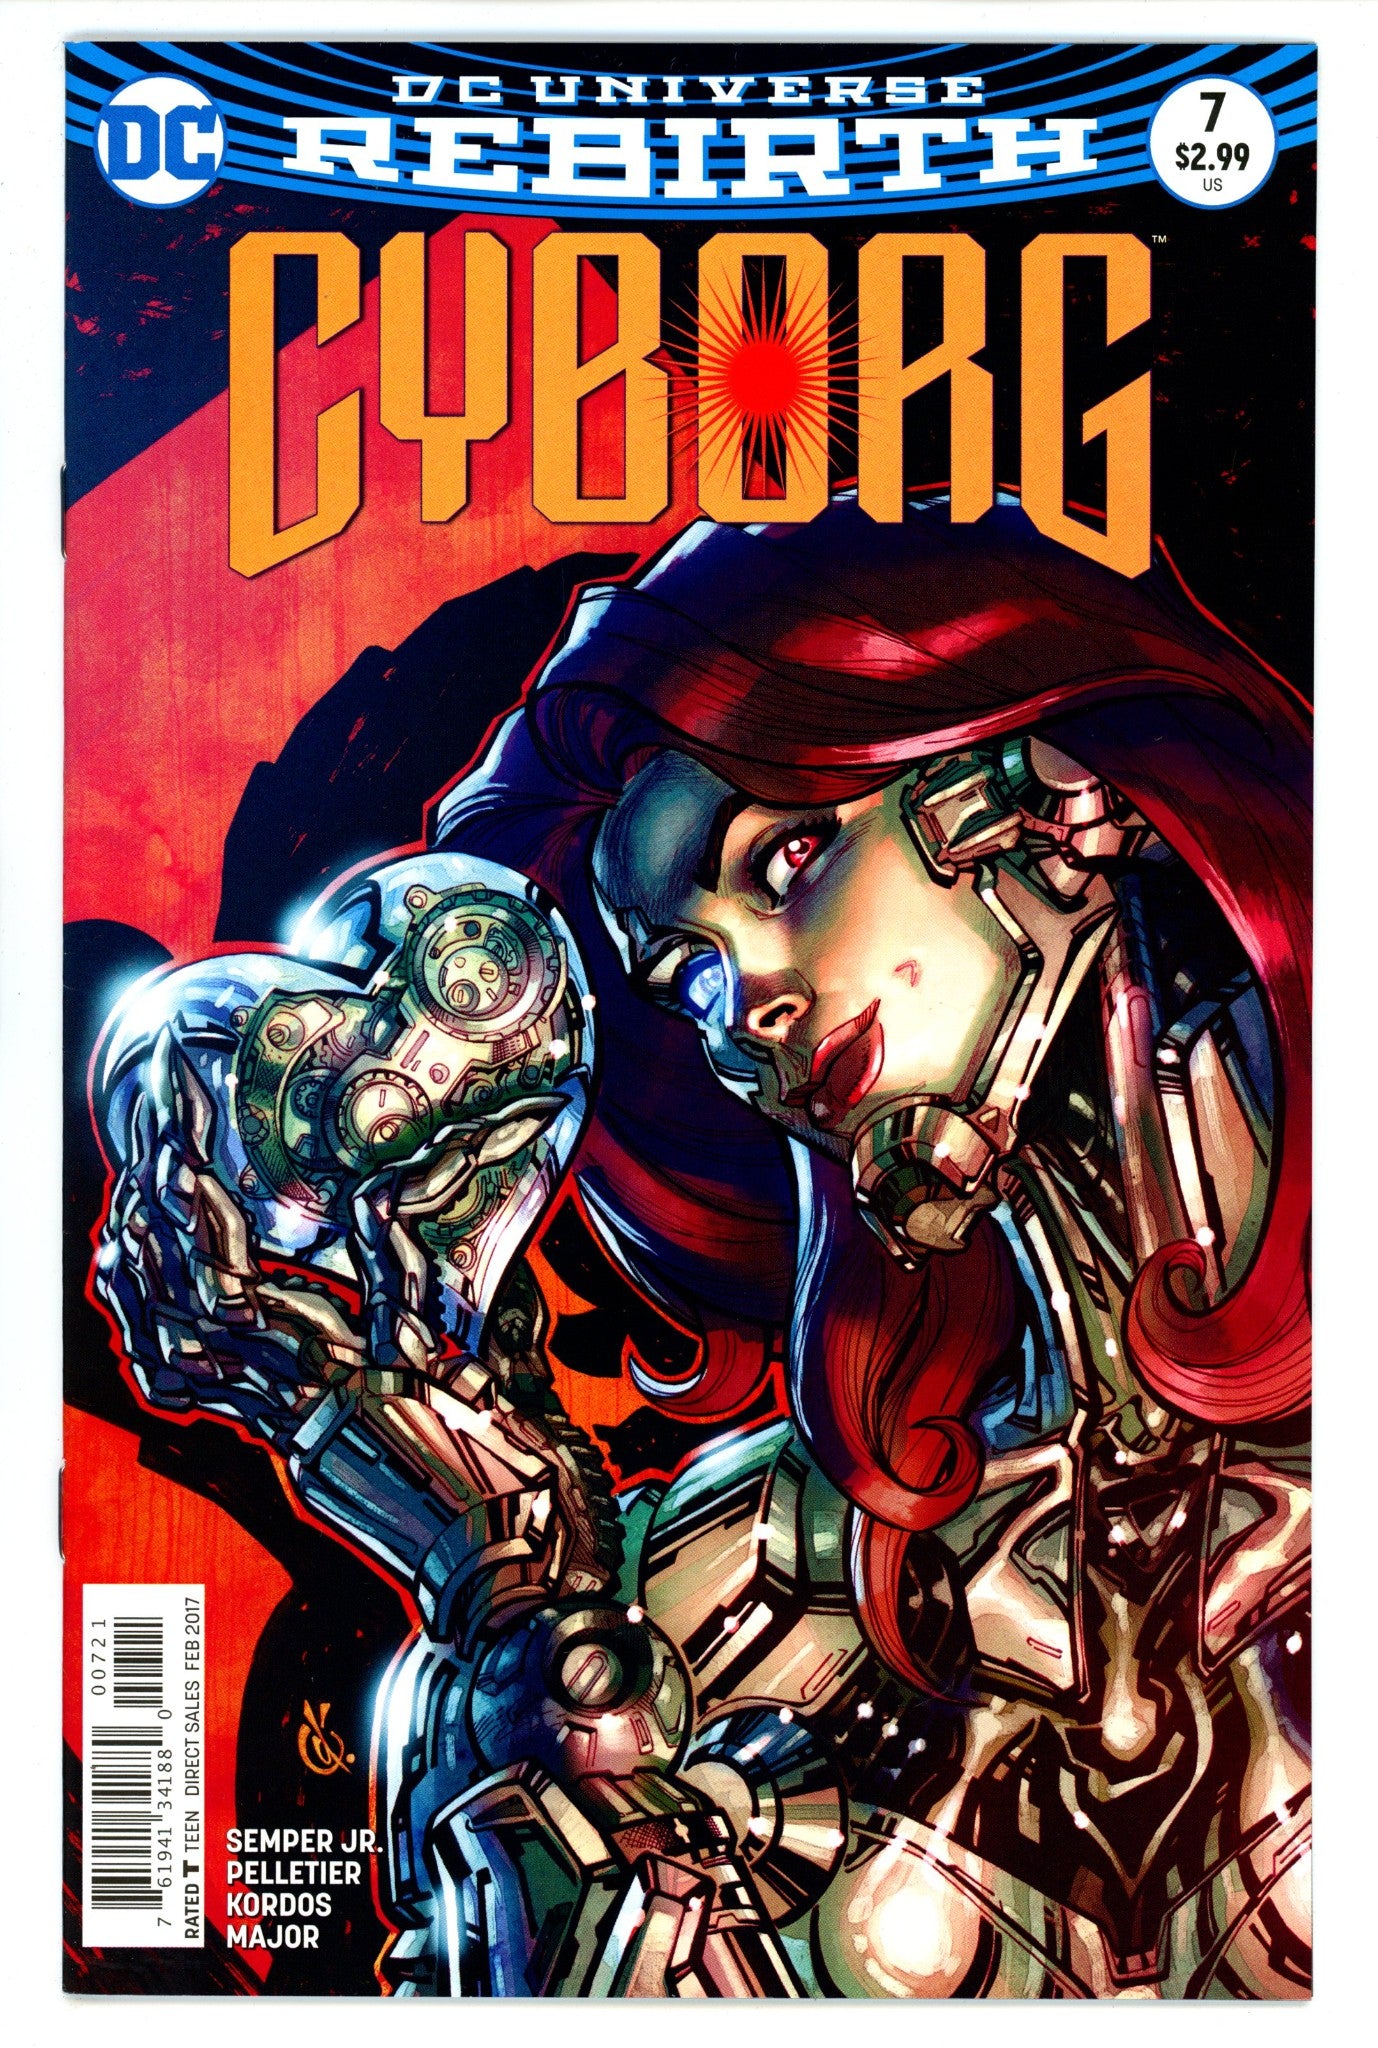 Cyborg Vol 2 7 High Grade (2017) D'Anda Variant 